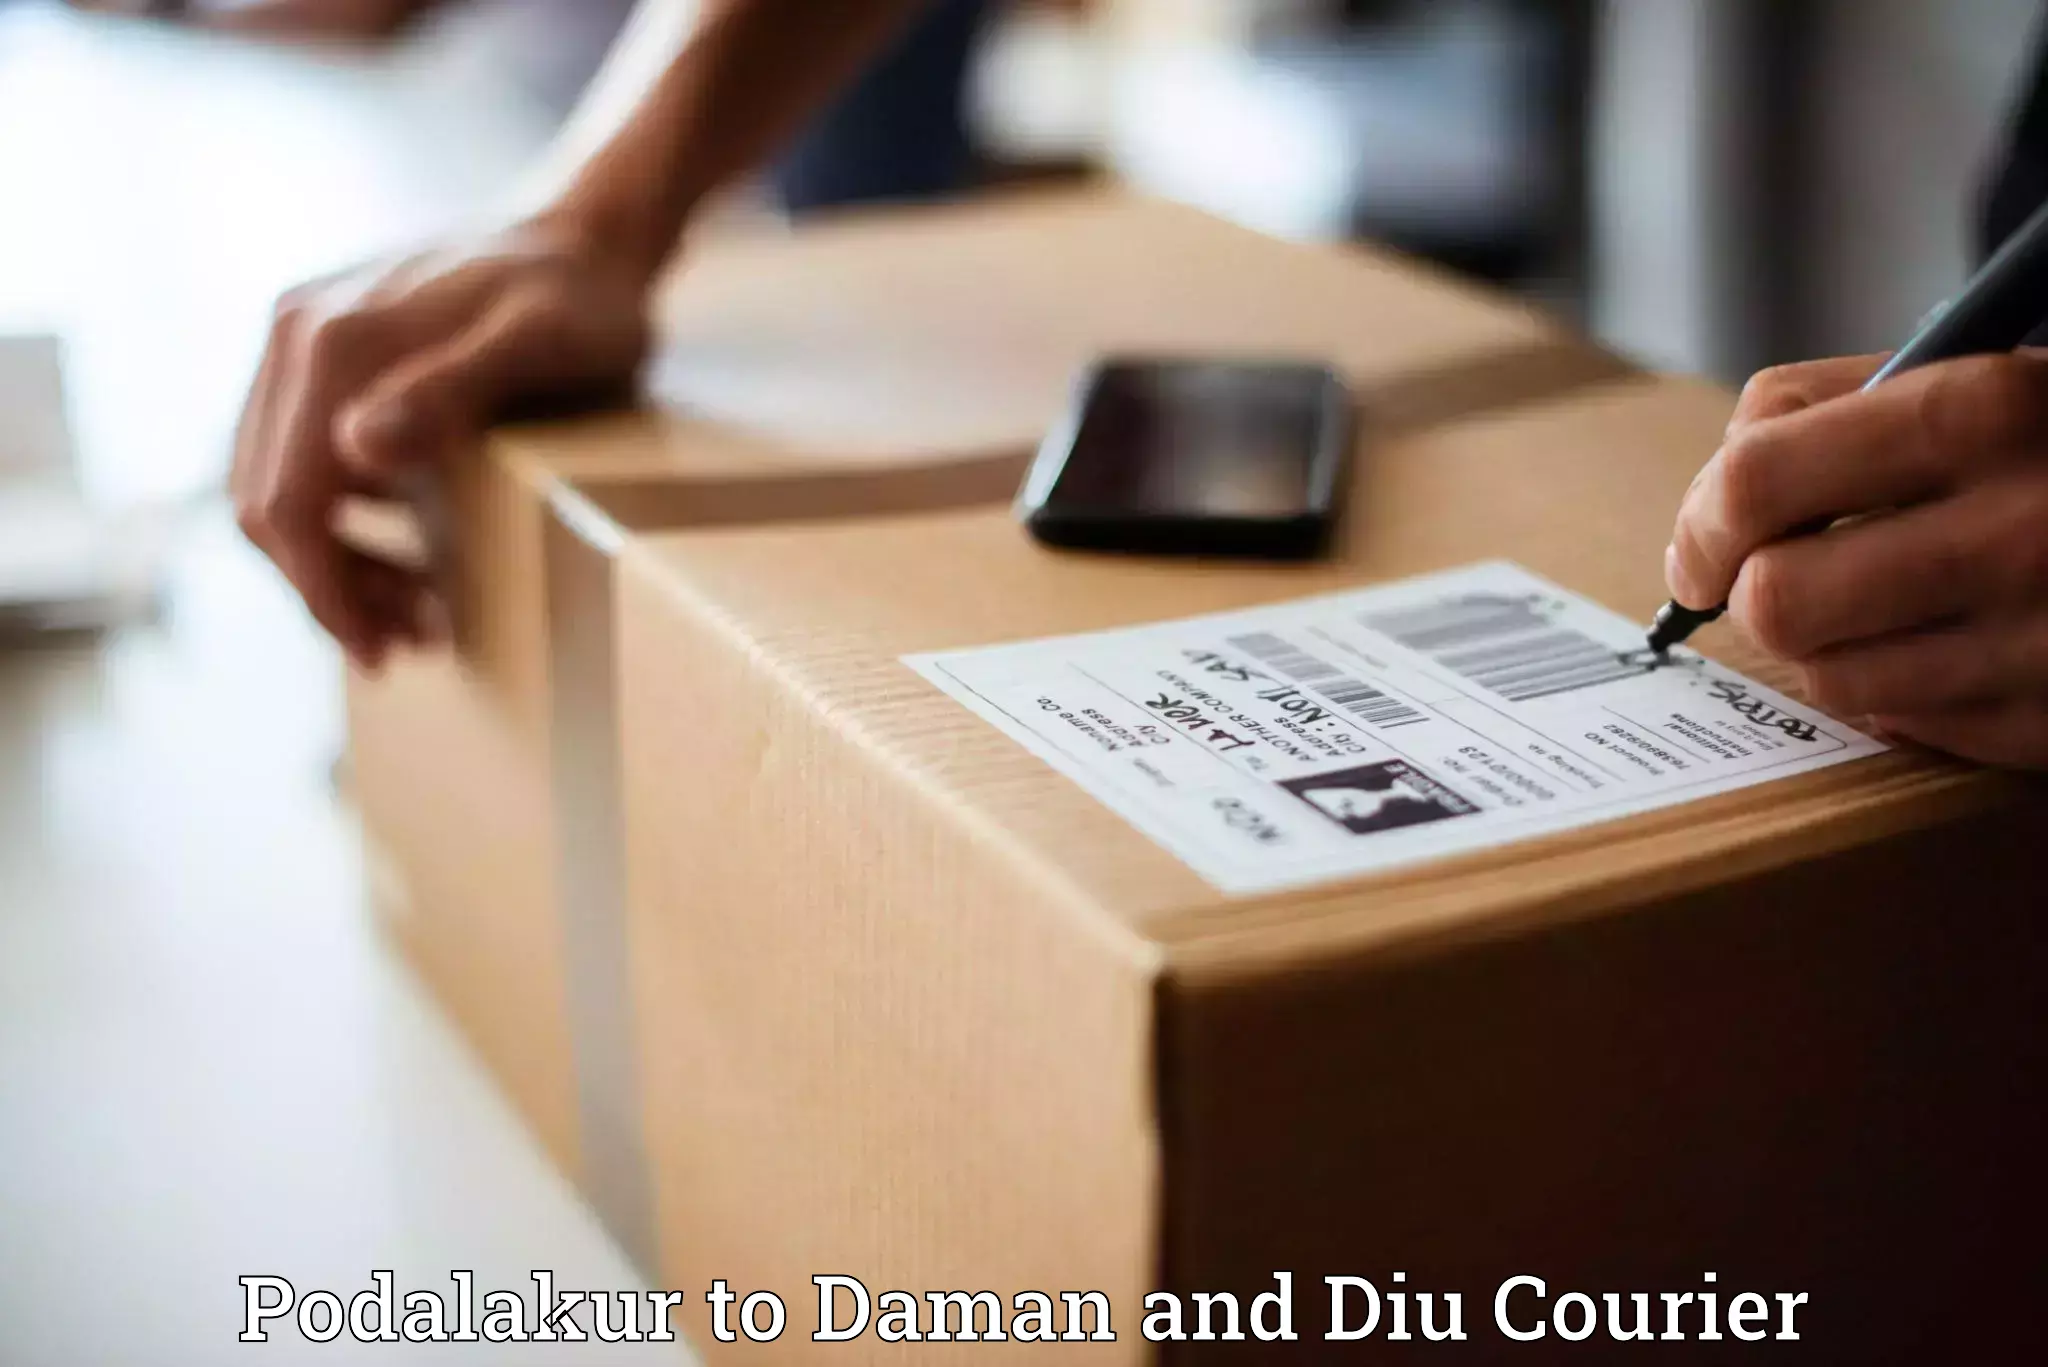 Courier service partnerships Podalakur to Daman and Diu